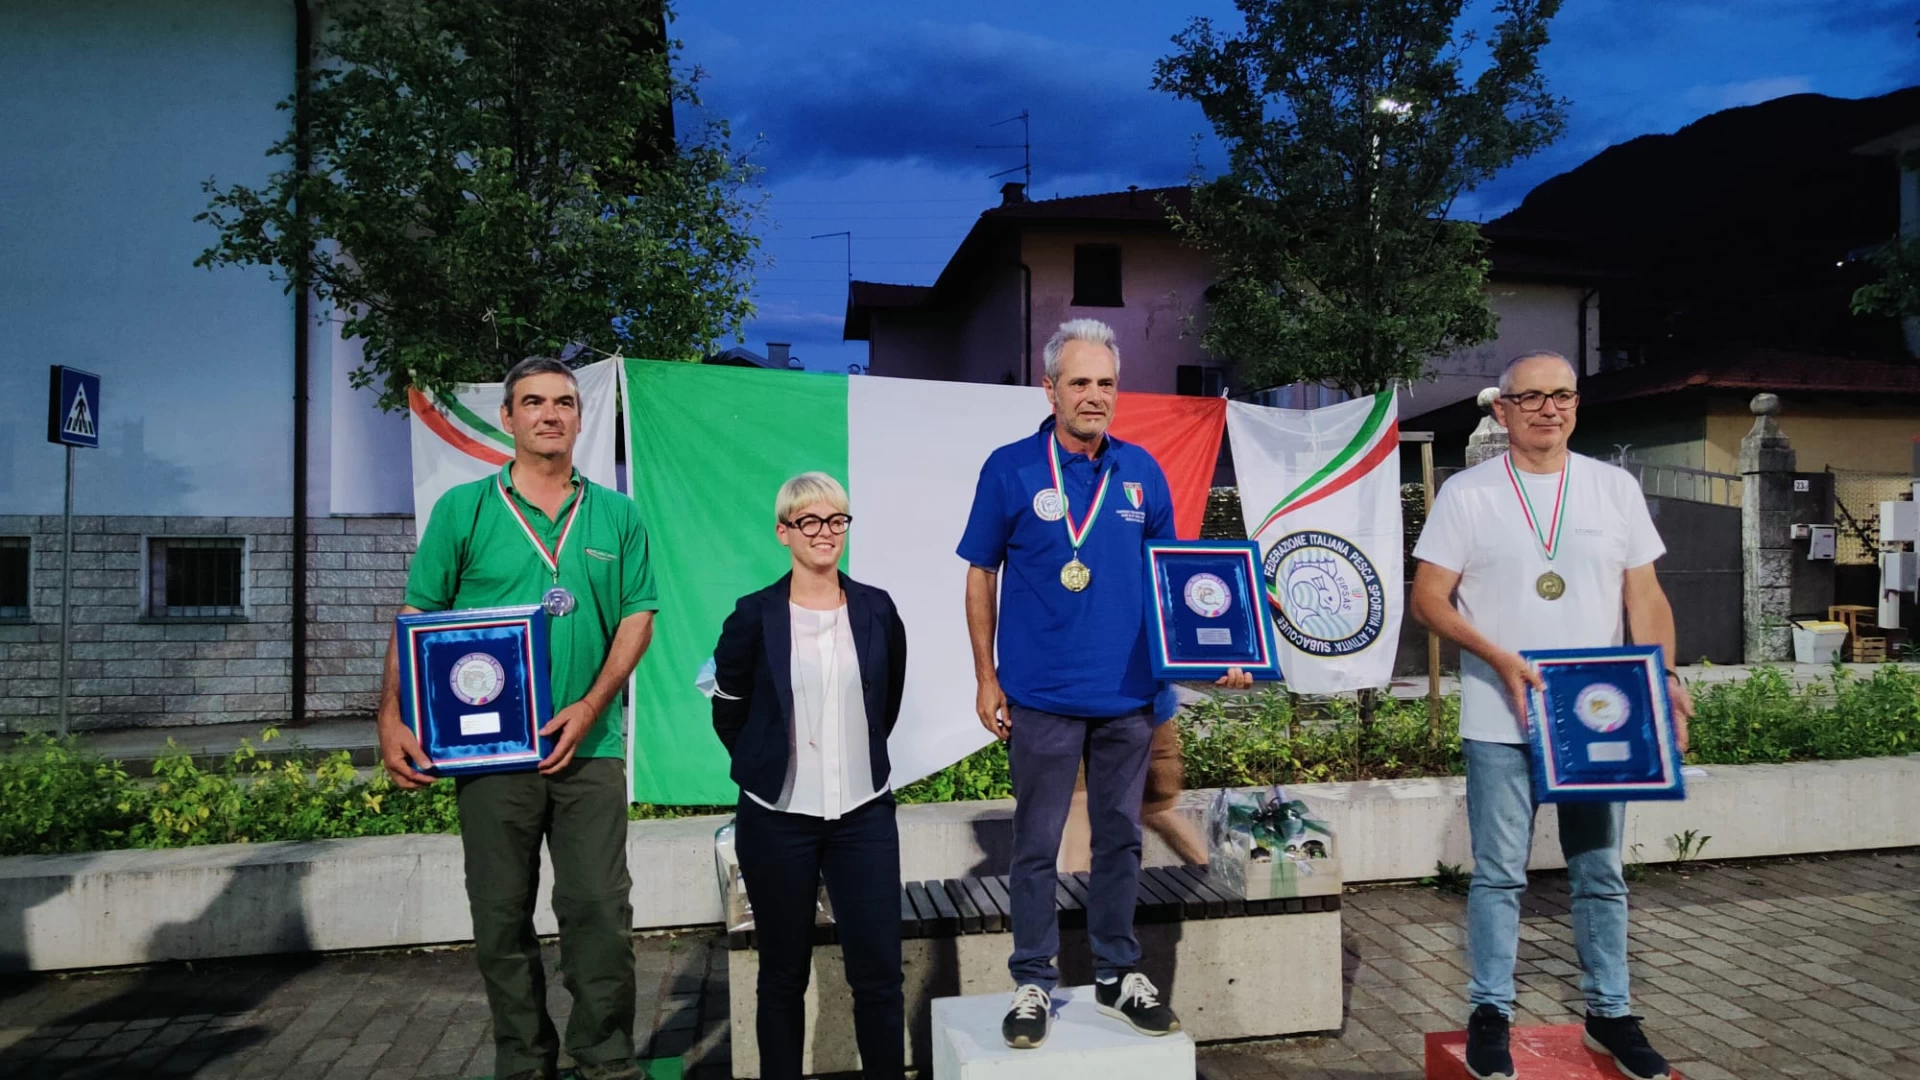 Pesca Sportiva: in Trentino e’ tripudio per gli atleti molisani. Tre medaglie d’oro e una di bronzo conquistate.